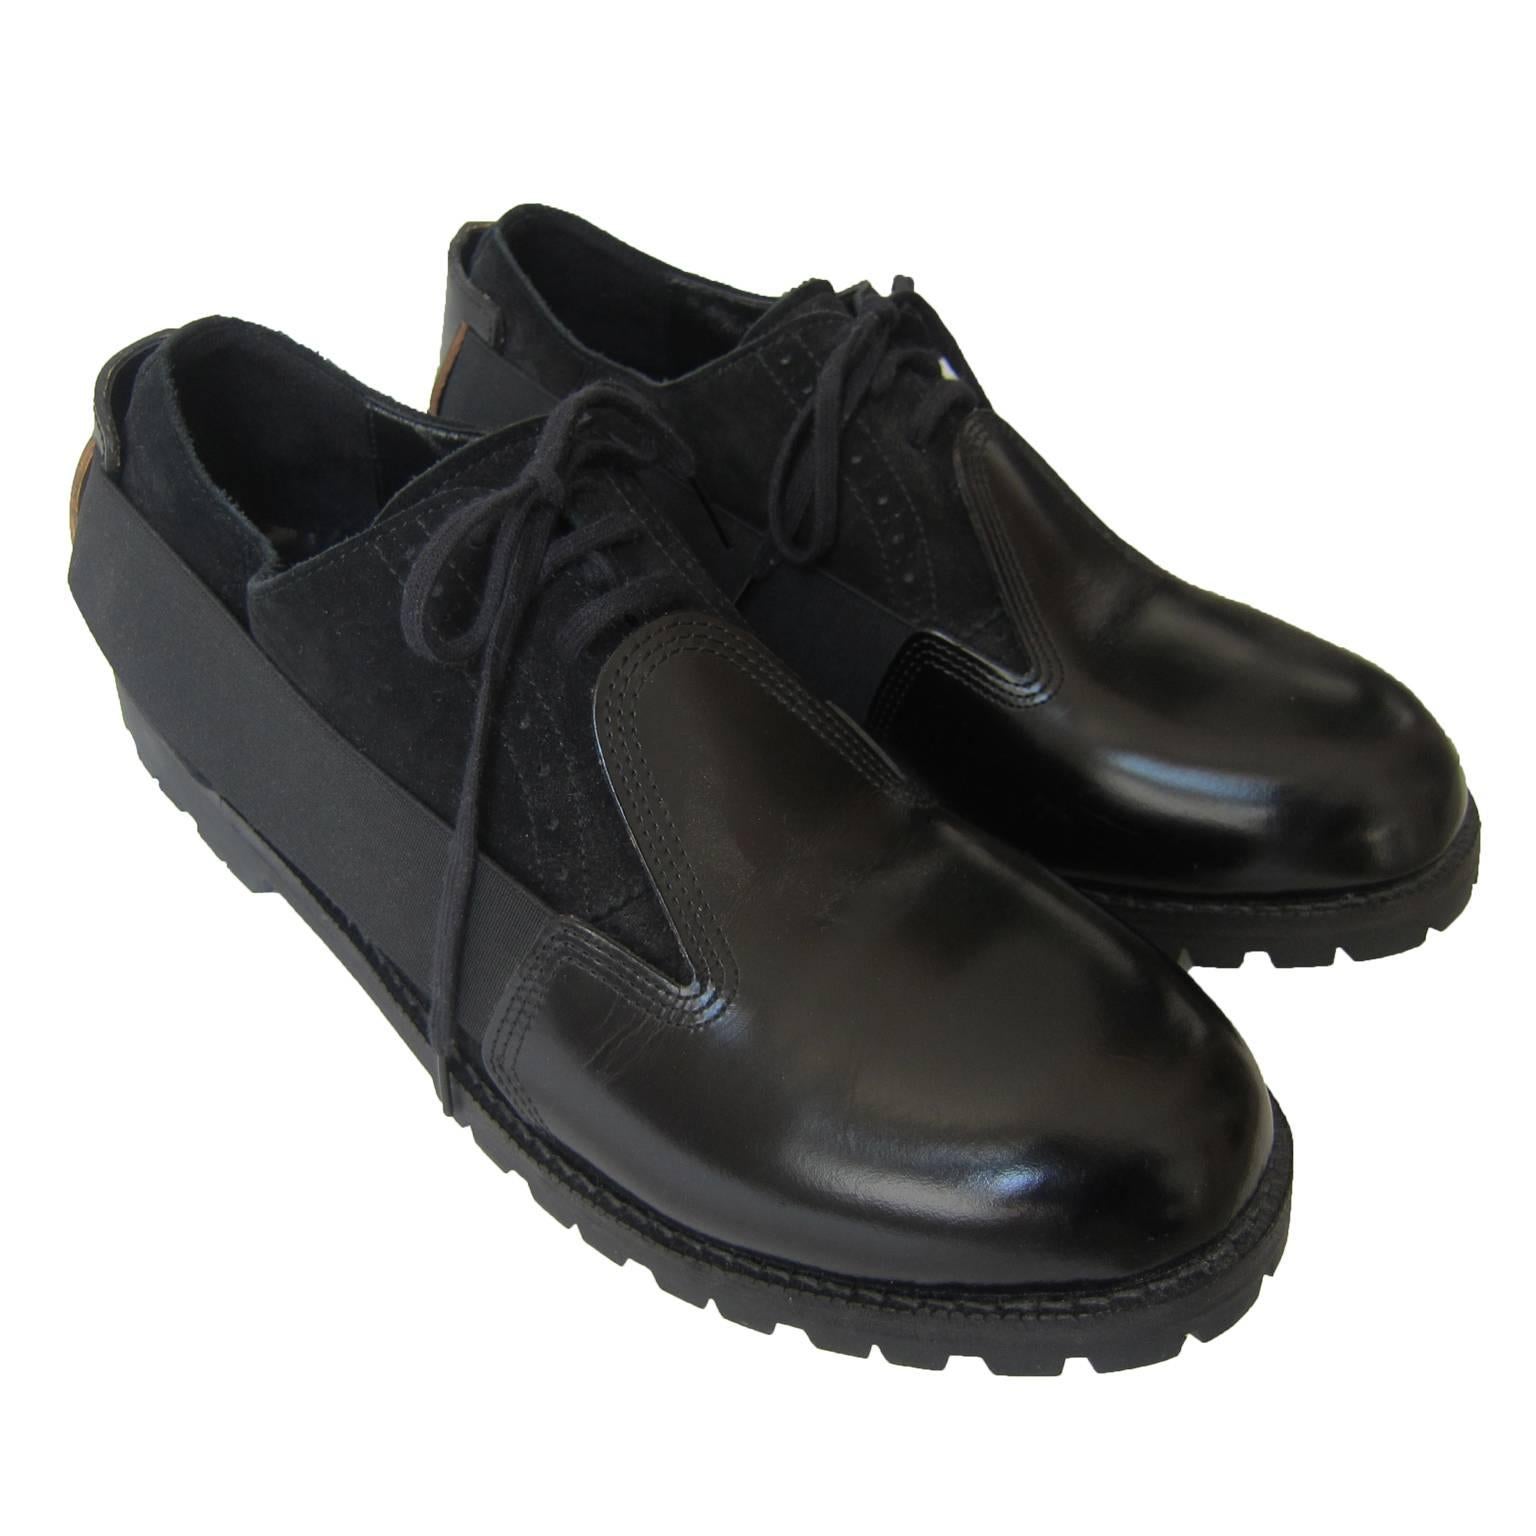 Comme des Garcons Homme Plus black suede mix leather shoes with elastic detail.
New without box. 
Size : 27 cm Japan (US 9.5 / EU 43.5)

